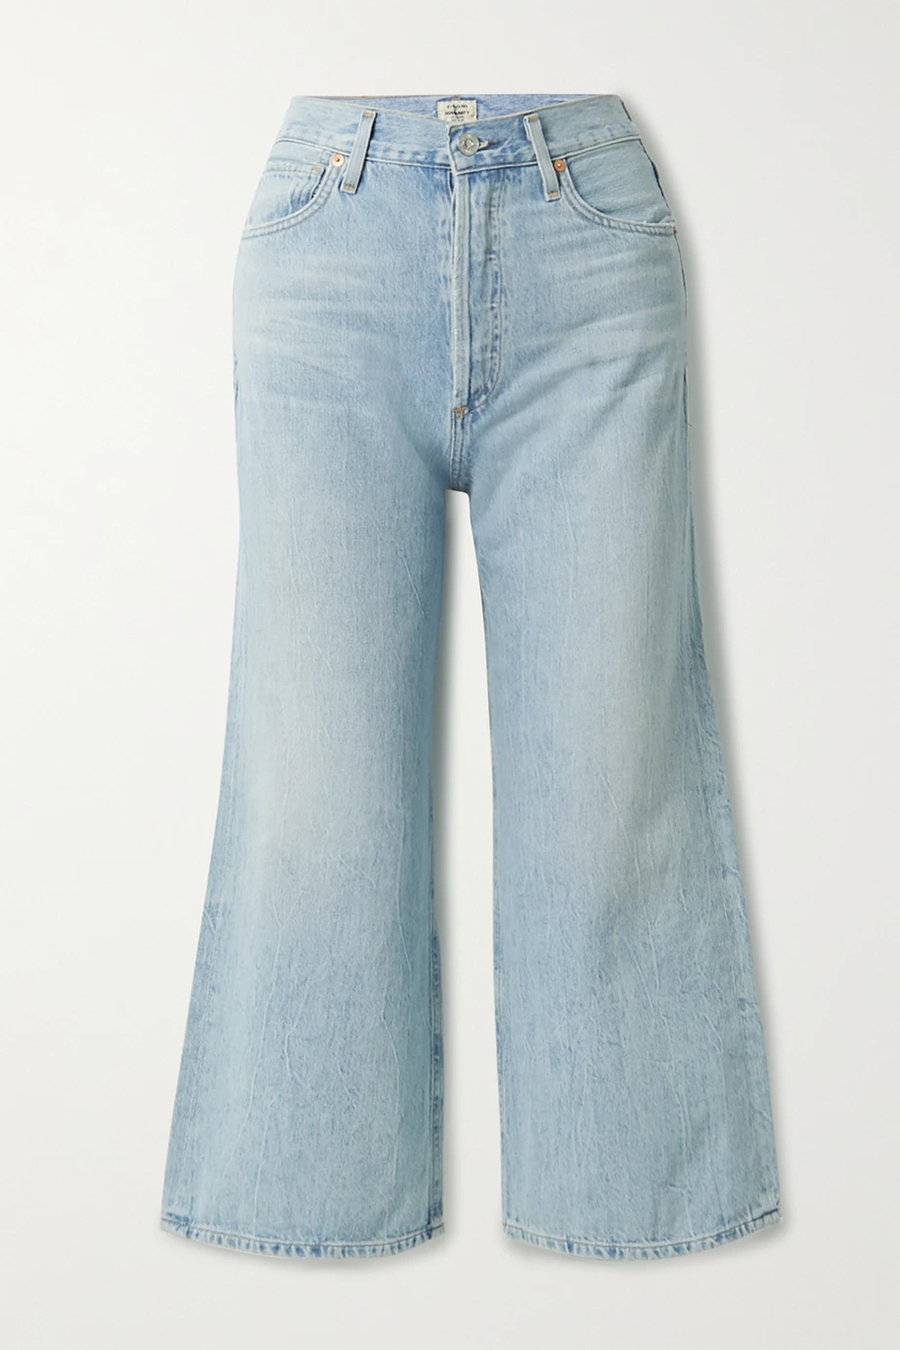 модные джинсы осень 2020 палаццо клеш свободные голубые с широкими штанинами высокая посадка